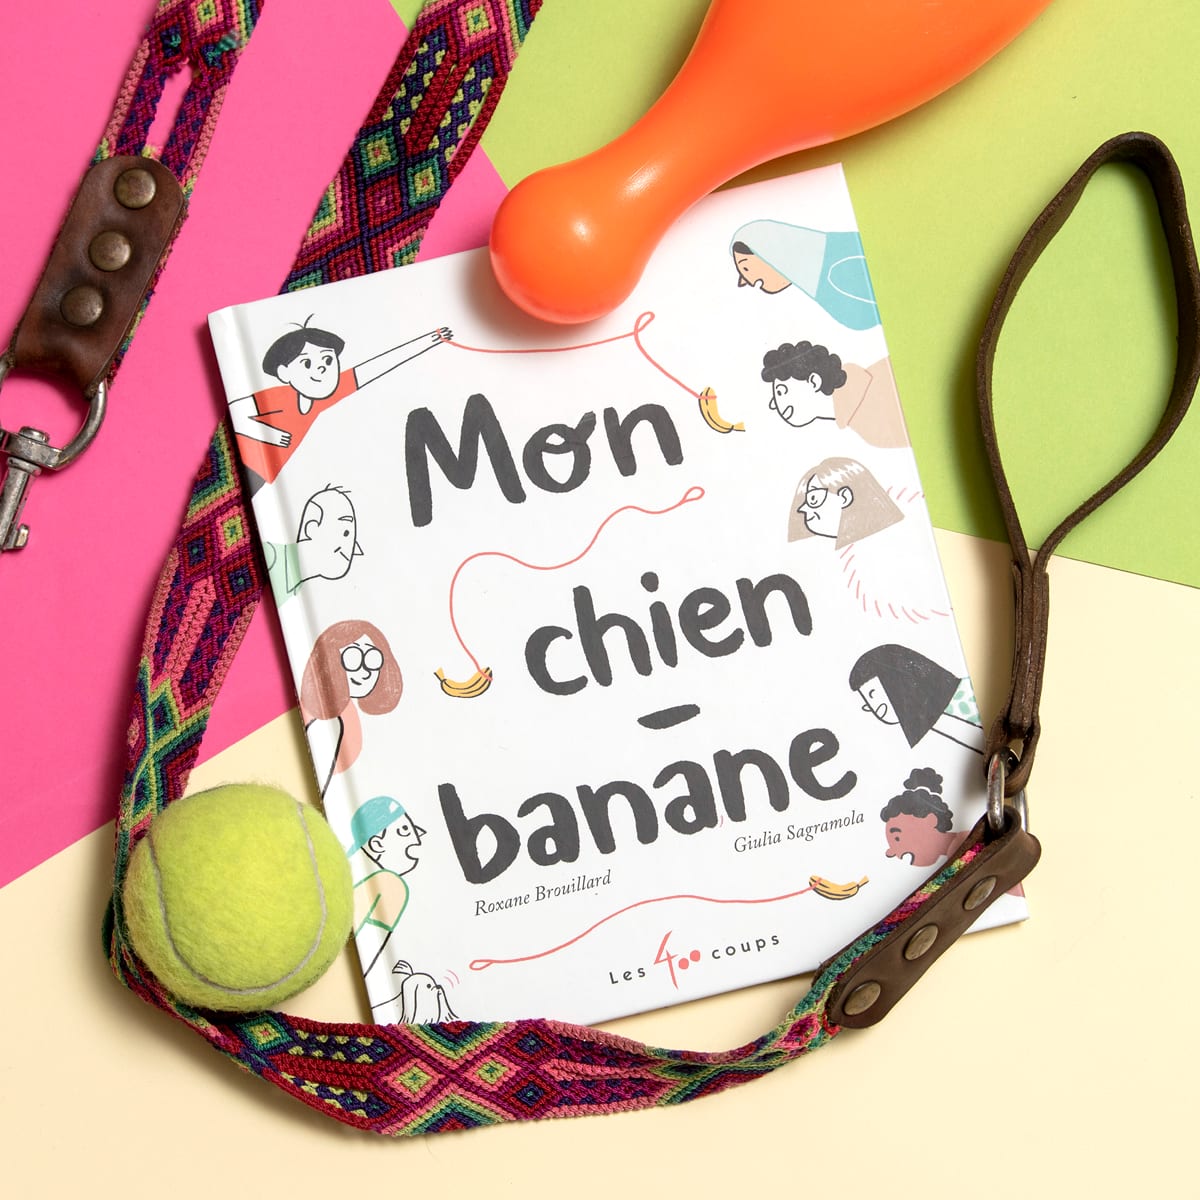 Mon chien-banane, de Roxane Brouillard (texte) et Giulia Sagramola (illustrations), éditions Les 400 coups